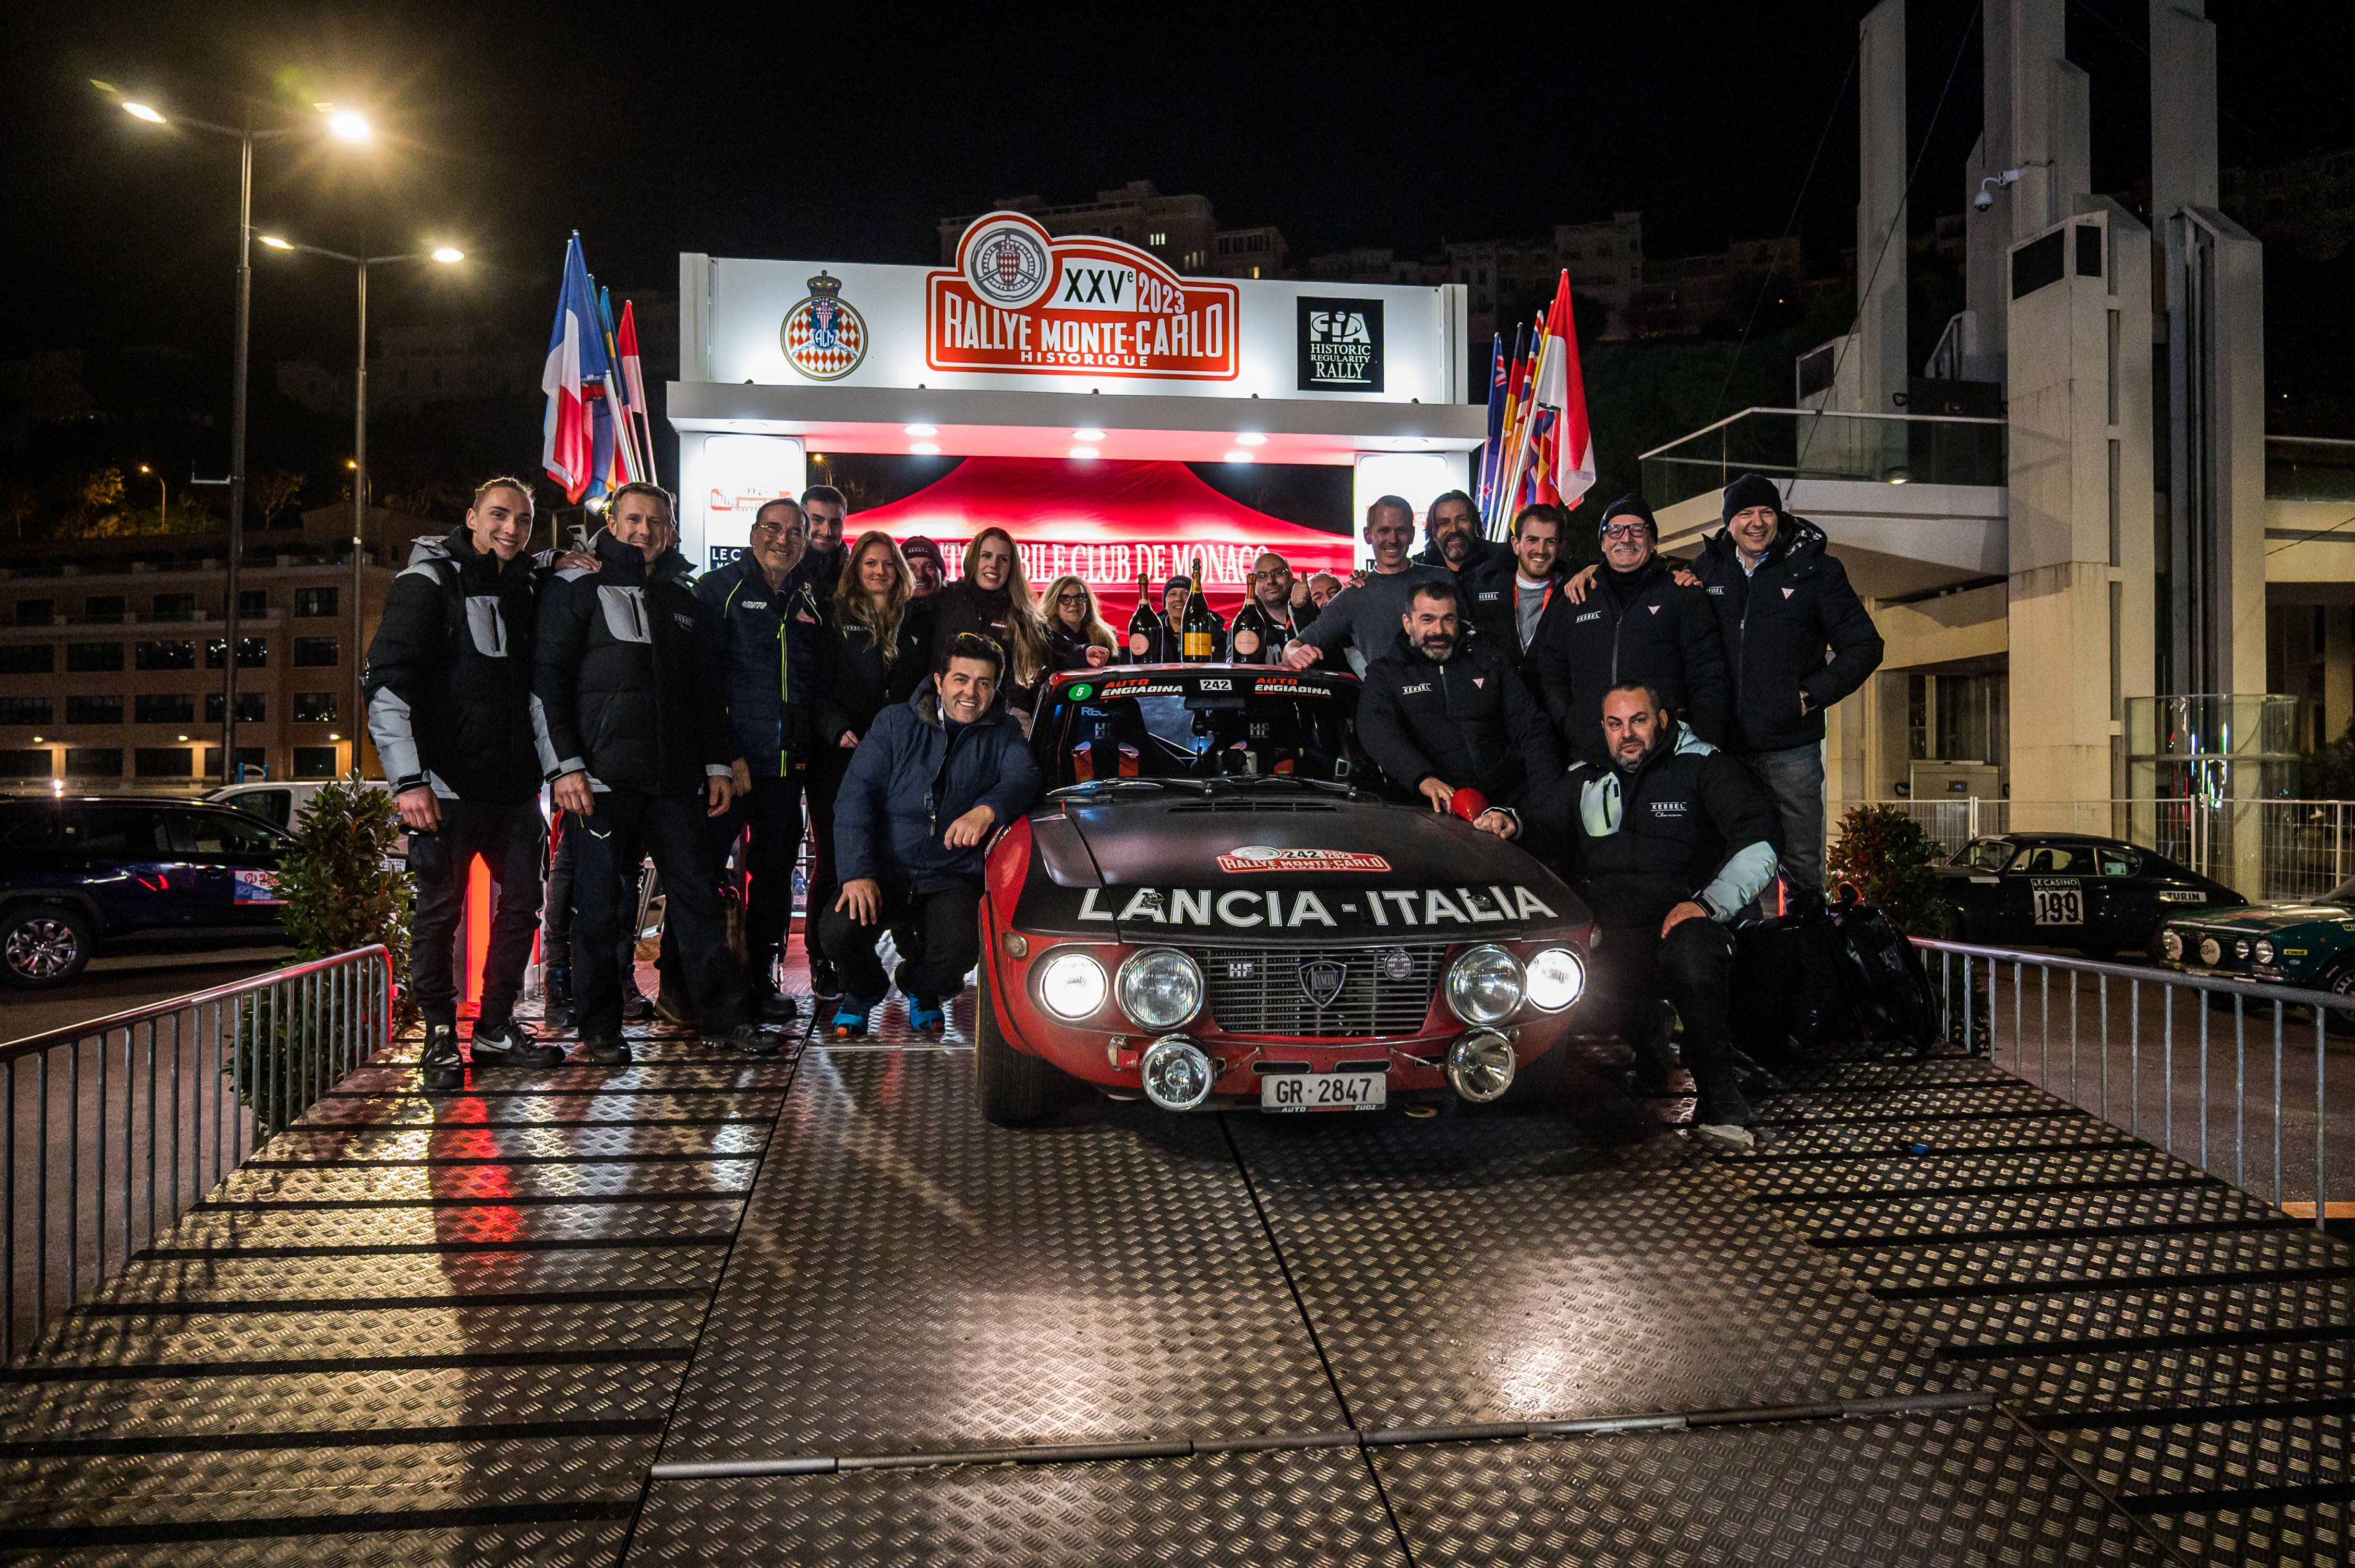 Lancia gana el Rally Montecarlo Histórico!